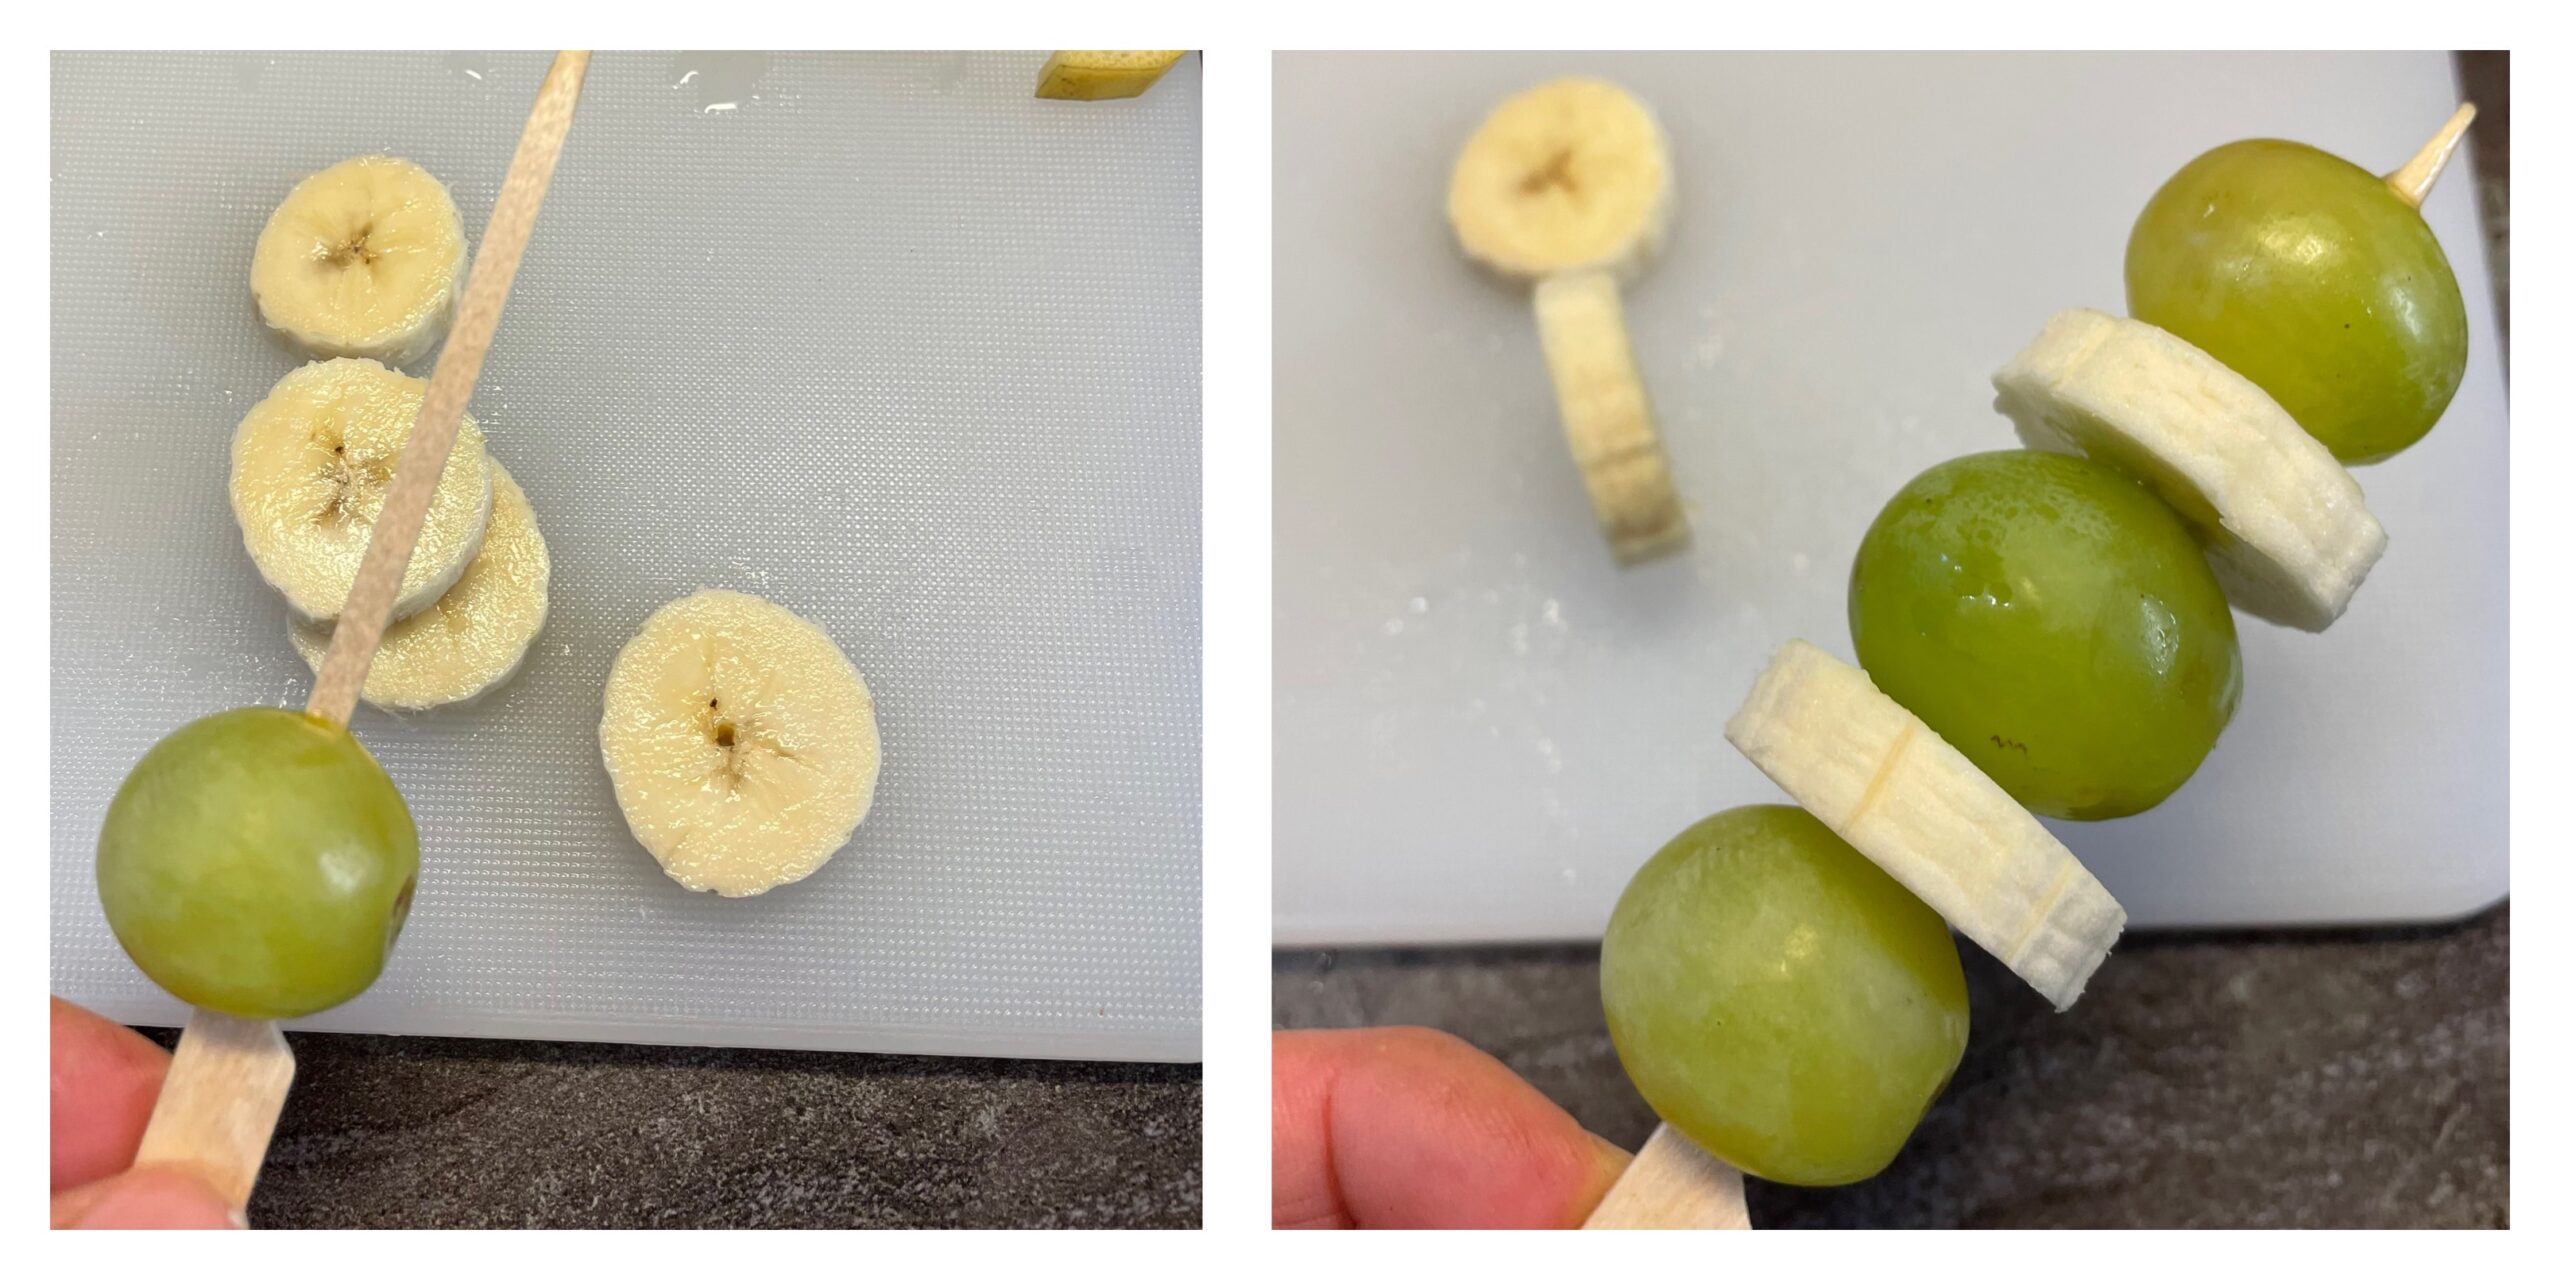 Bild zum Schritt 4 für das Bastel- und DIY-Abenteuer für Kinder: 'Auf einen Fingerfood-Spieß steckt ihr nun abwechselnd Trauben und Bananenscheiben...'